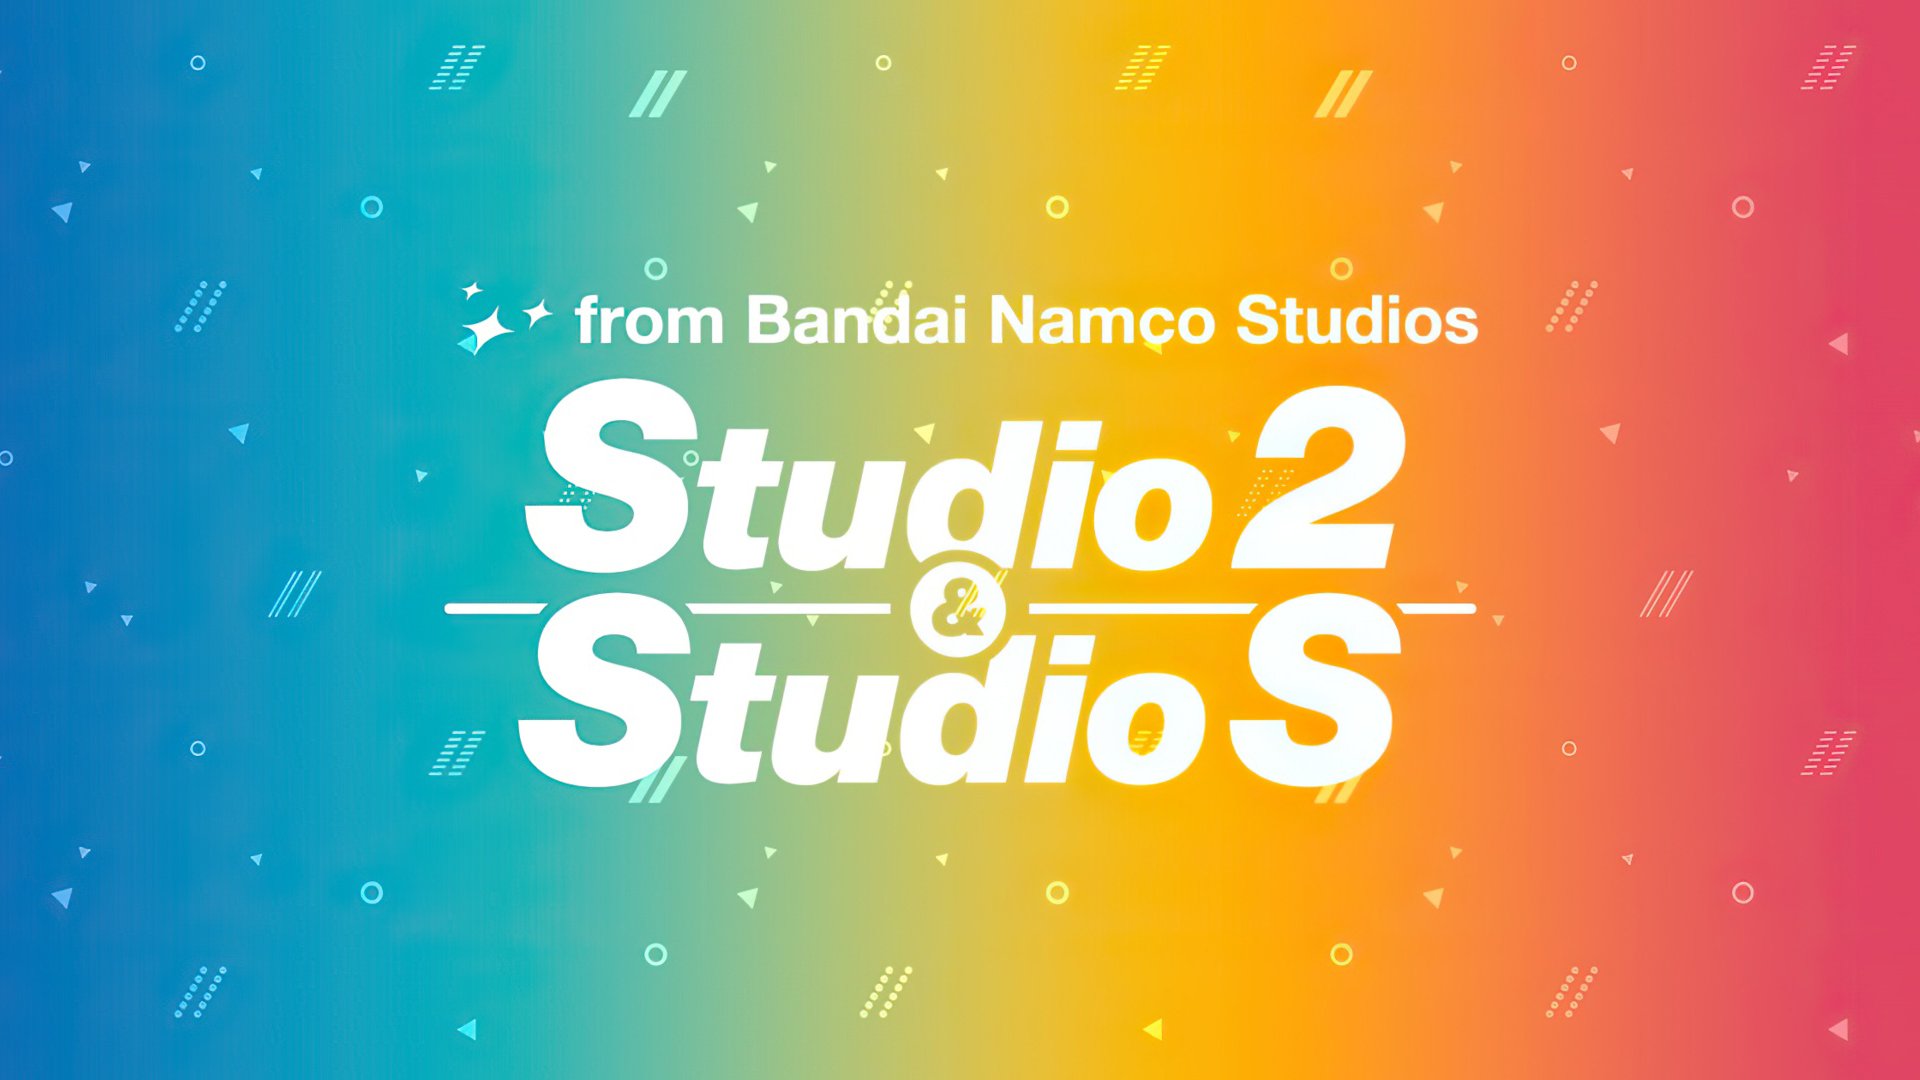 باندای نامکو از استودیوی Studio 2 & Studio S پرده برداشت